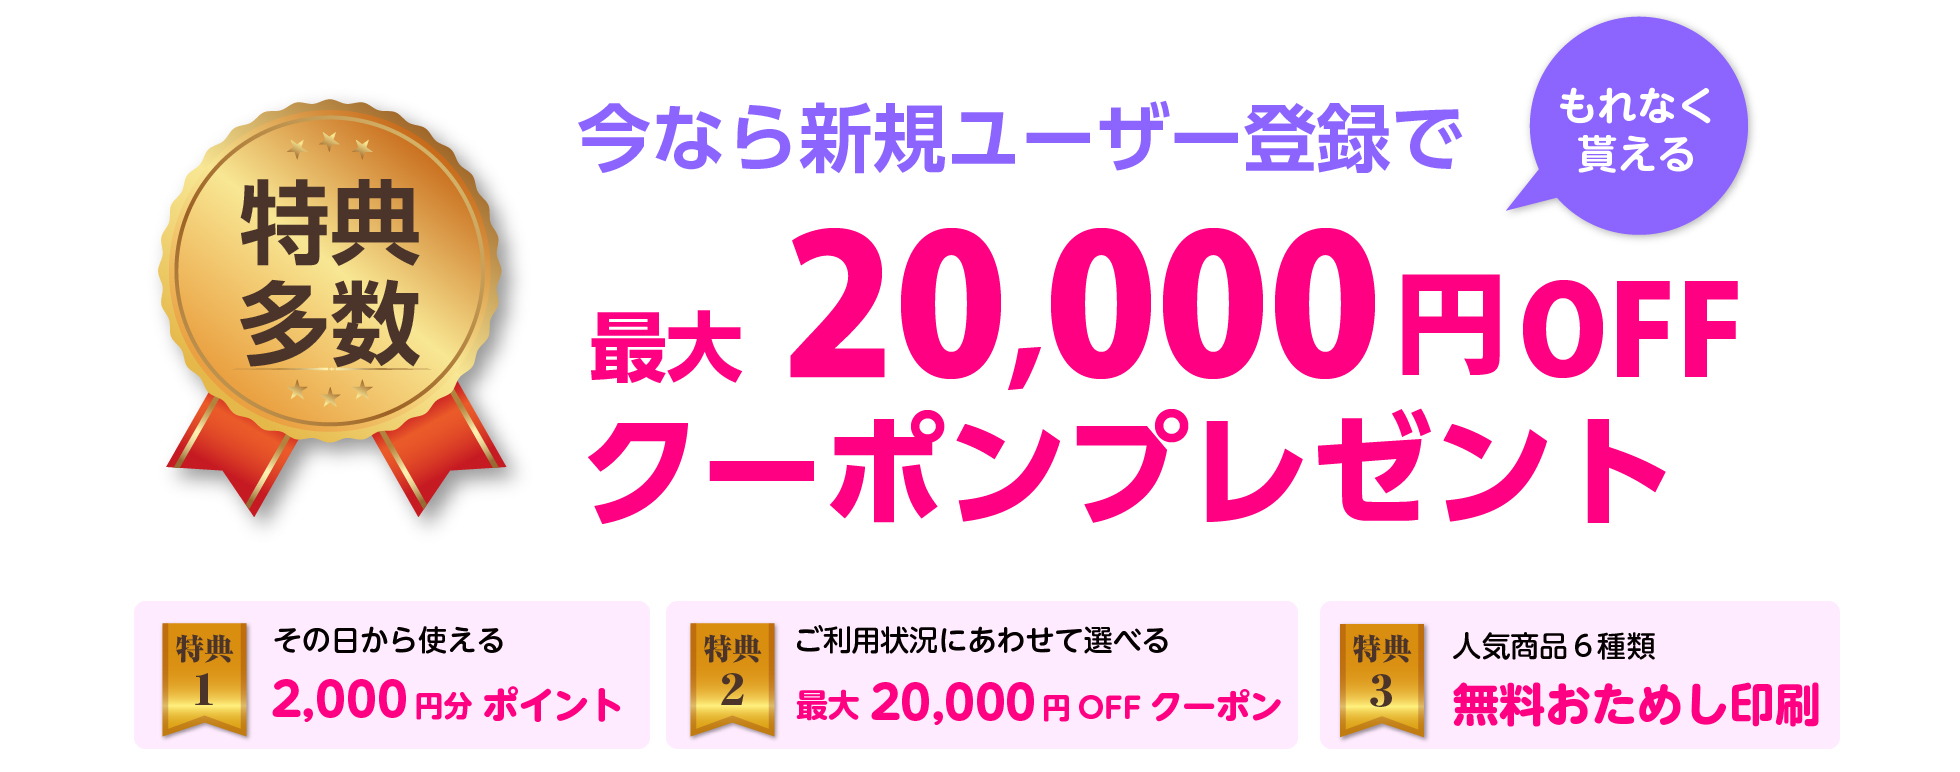 今なら新規ユーザー登録で最大20000円OFFクーポンプレゼント